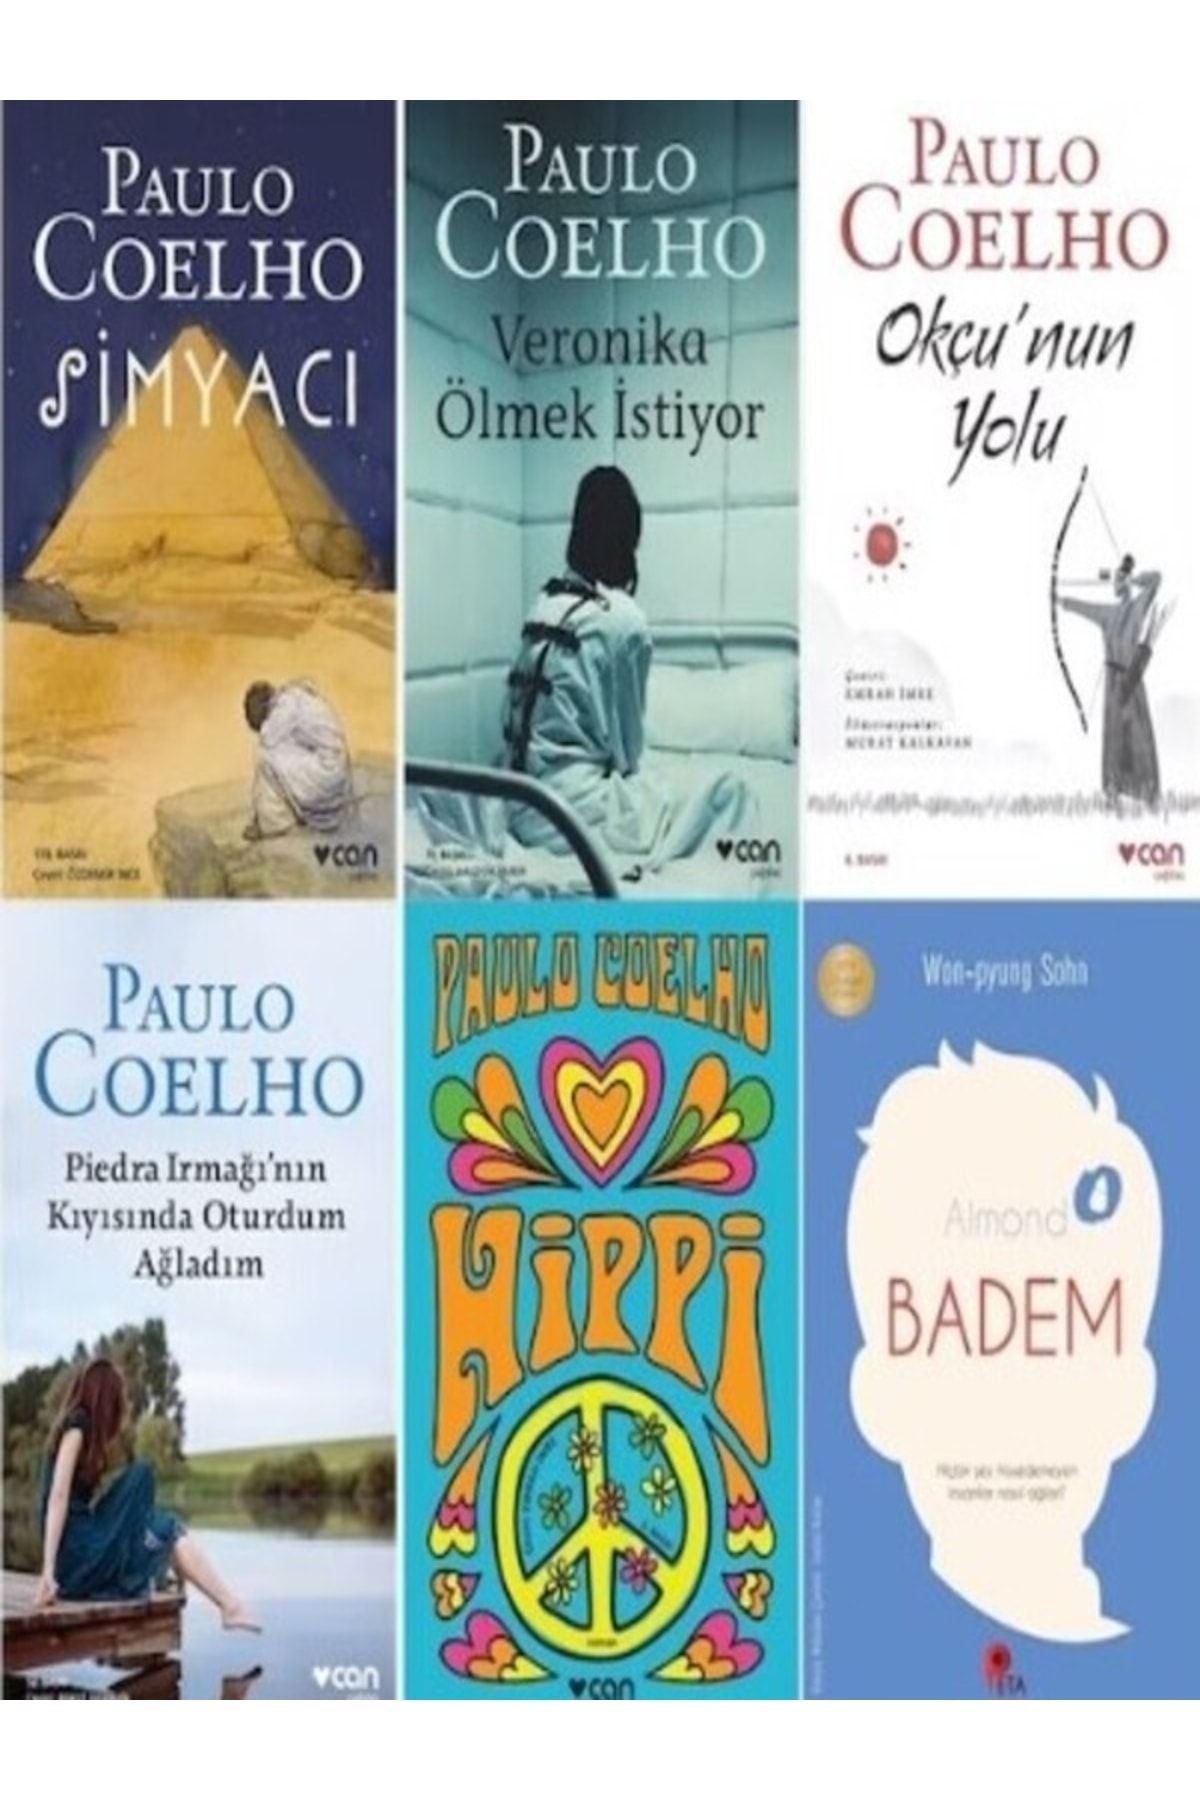 Can Yayınları Paulo Coelho Seti (5 Kitap + Badem Kitabı Hediye) Simyacı, Veronica Ölmek Istiyor, Hippi..